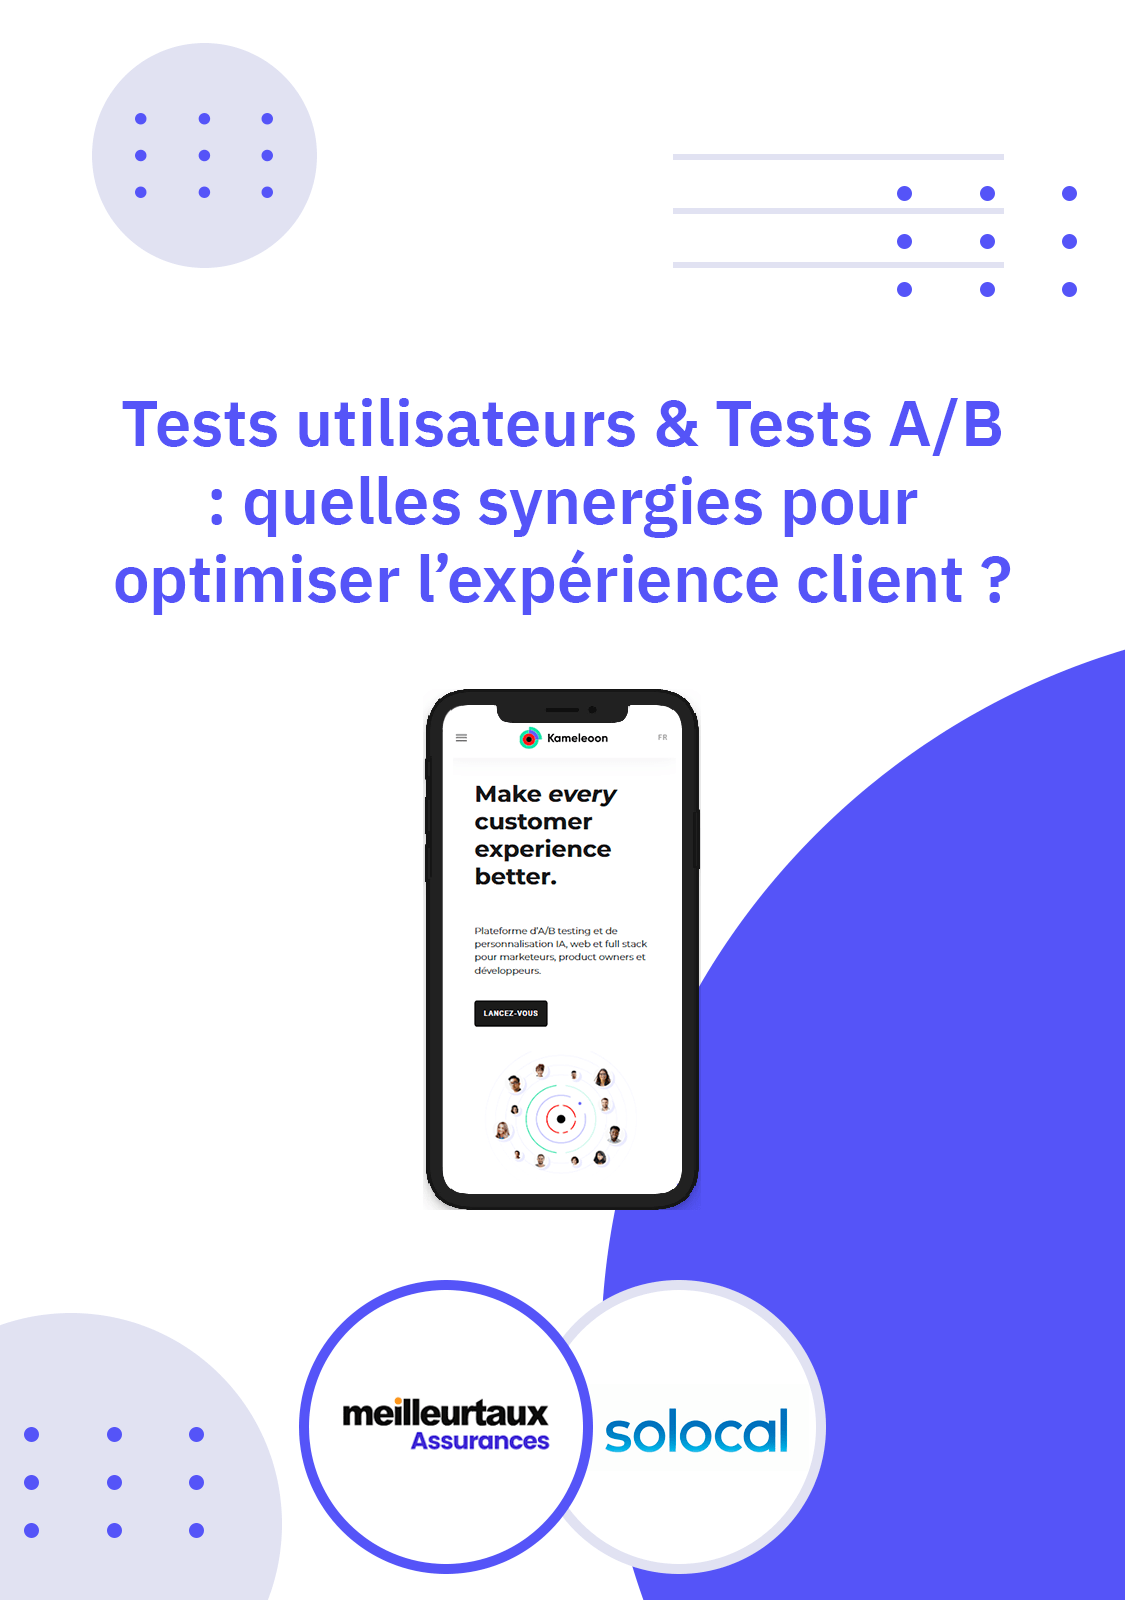 Tests utilisateurs & Tests A/B : quelles synergies pour optimiser l’expérience client ?